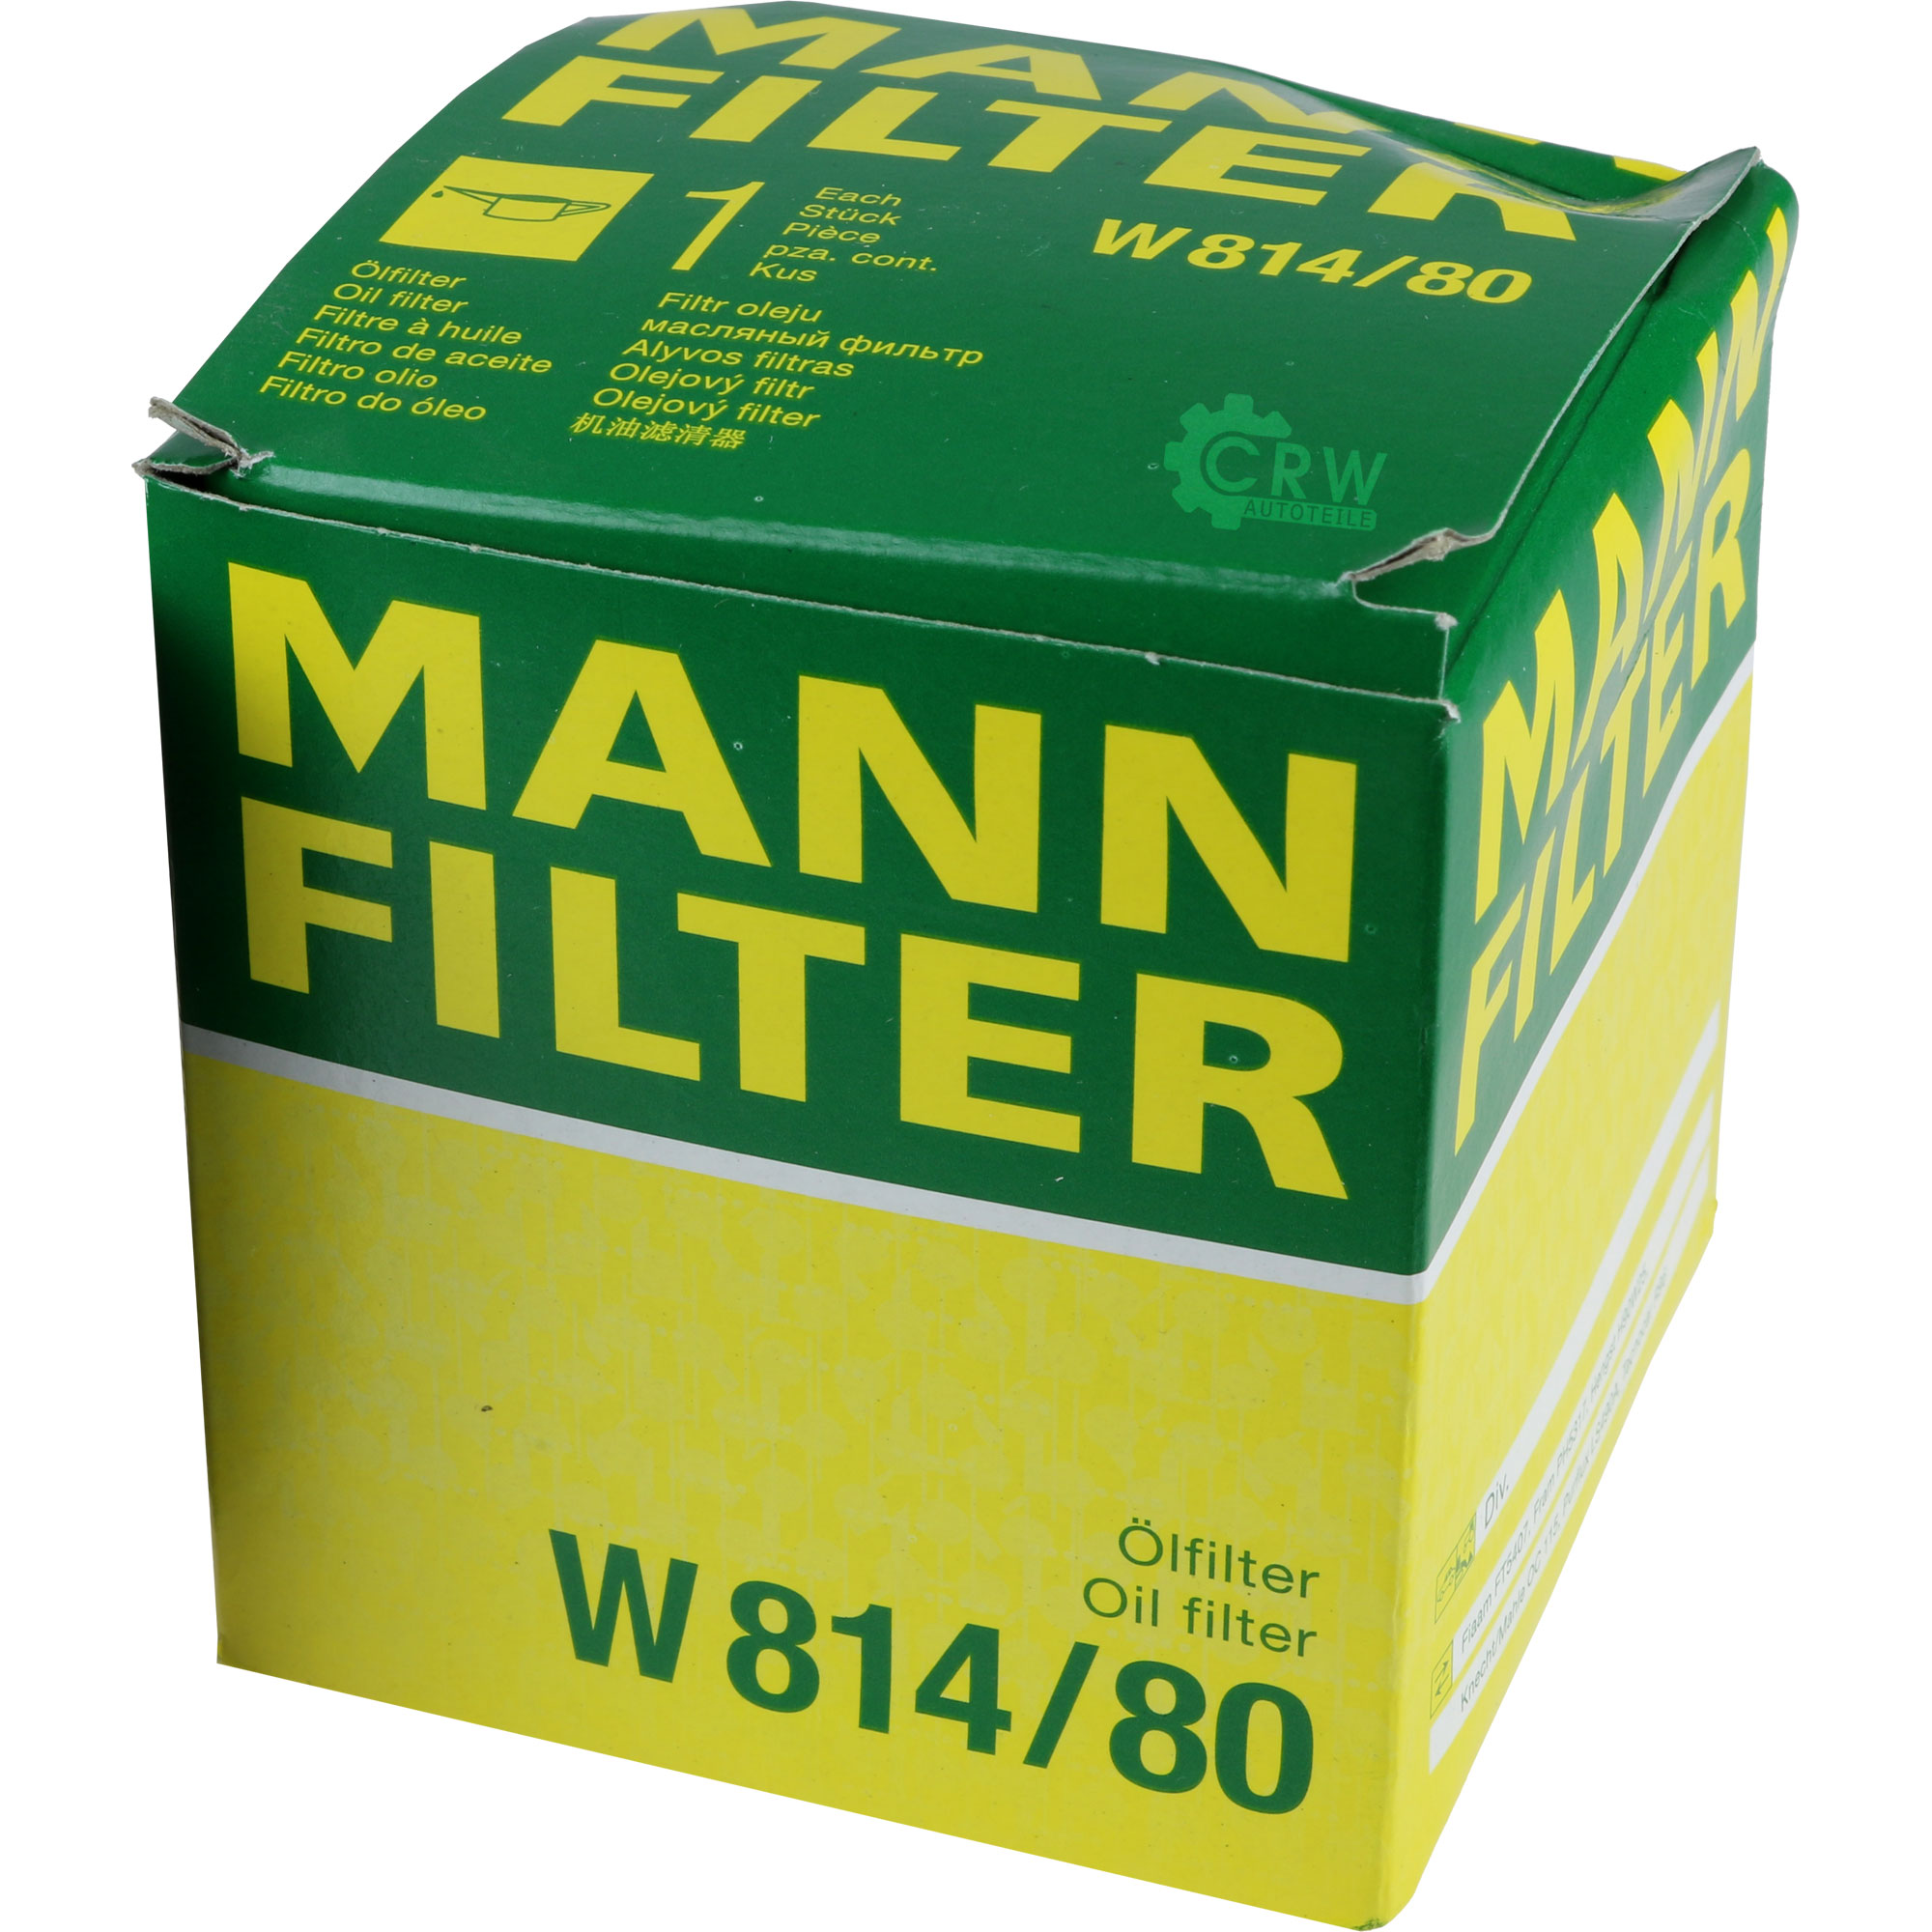 MANN-FILTER Ölfilter W 814/80 Oil Filter